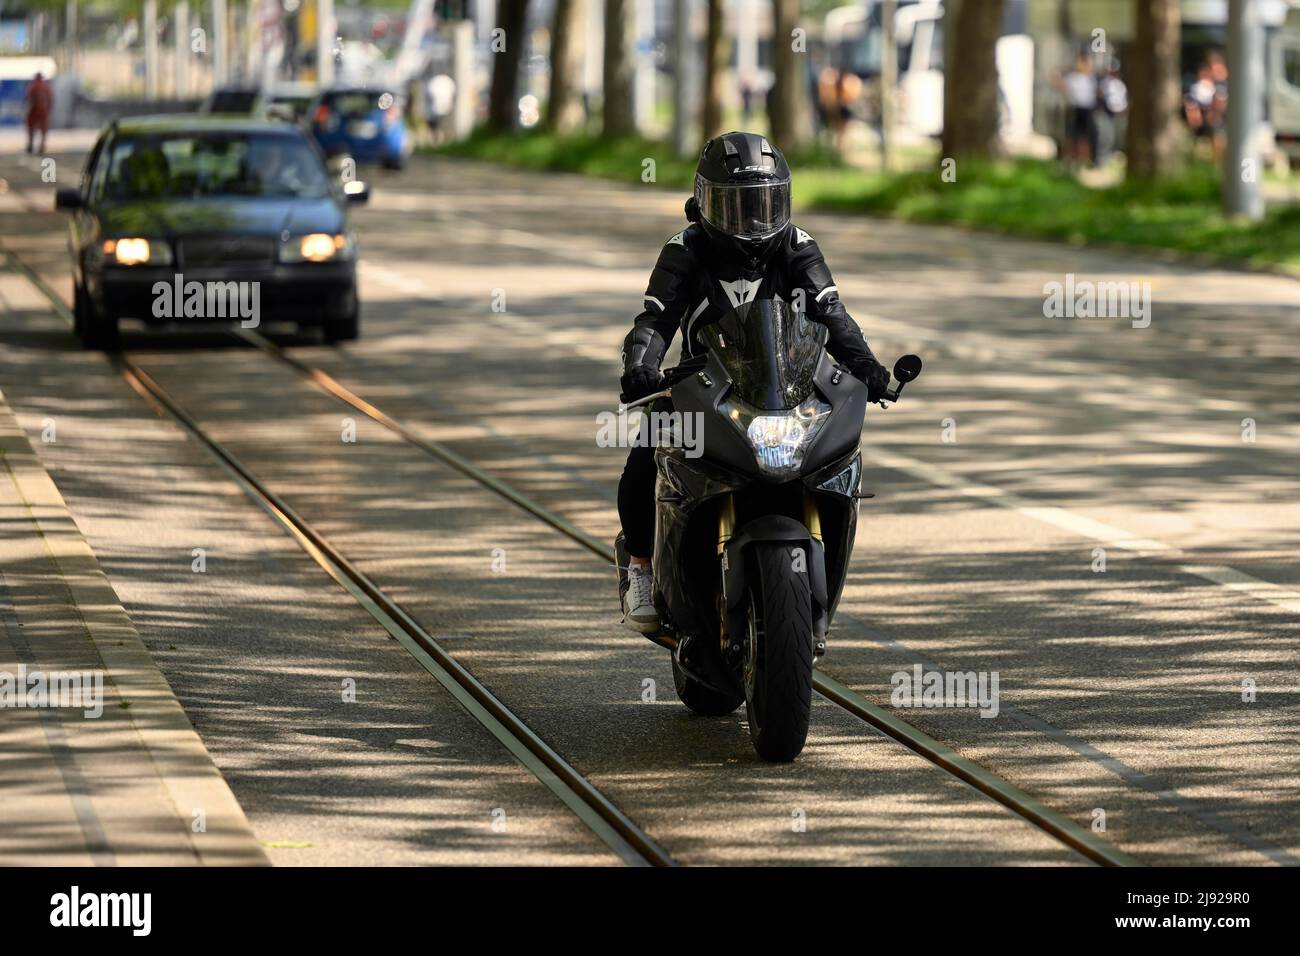 Motocycliste Banque D'Images